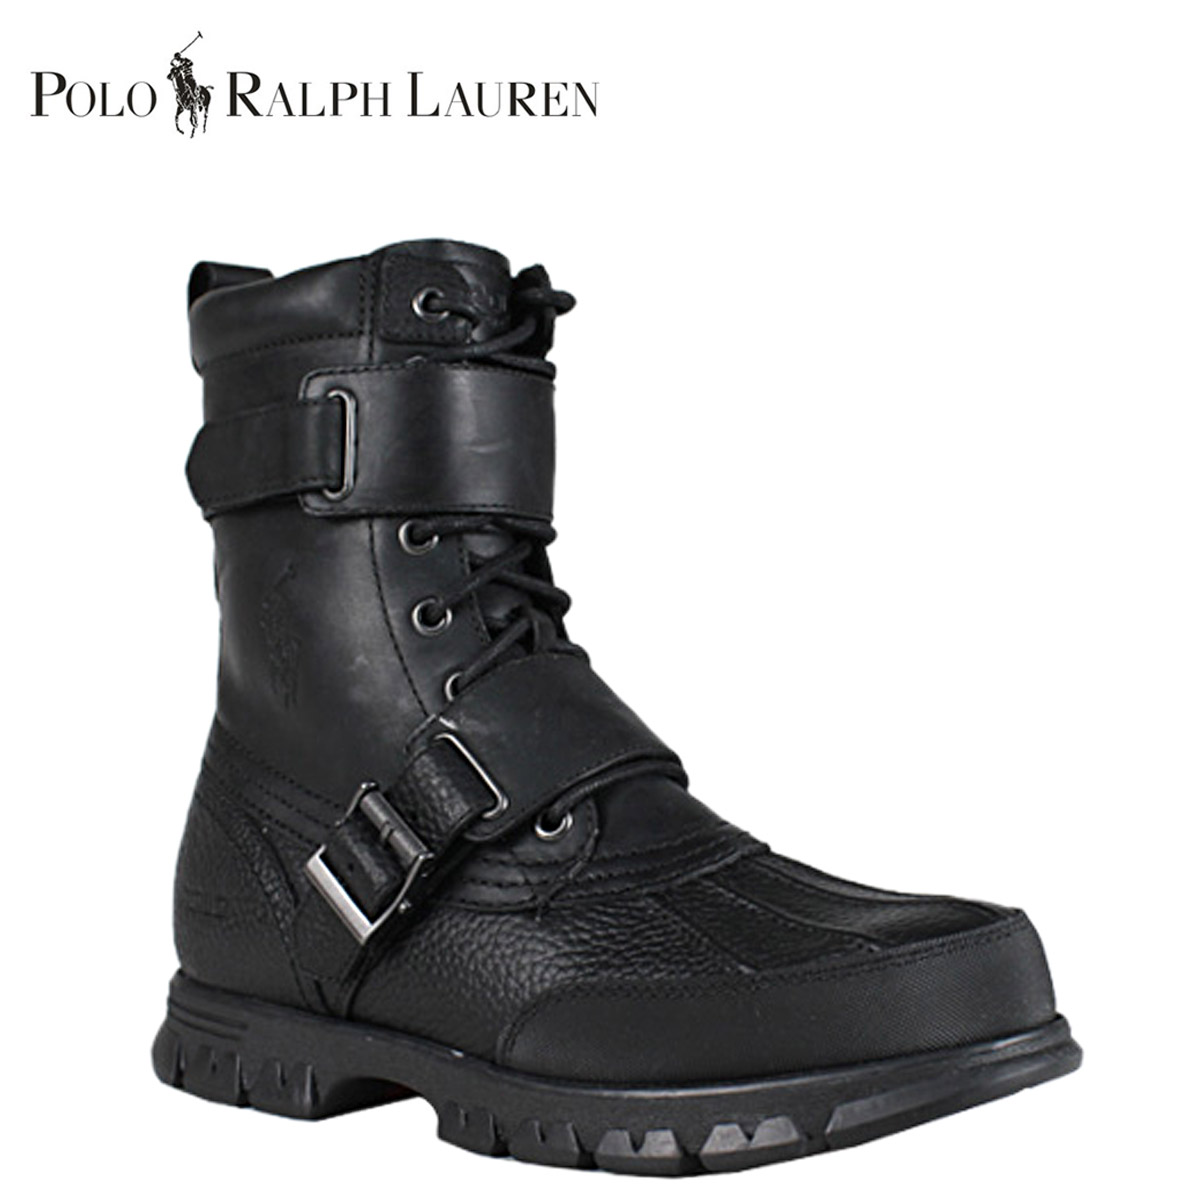 ralph lauren polo boots sale